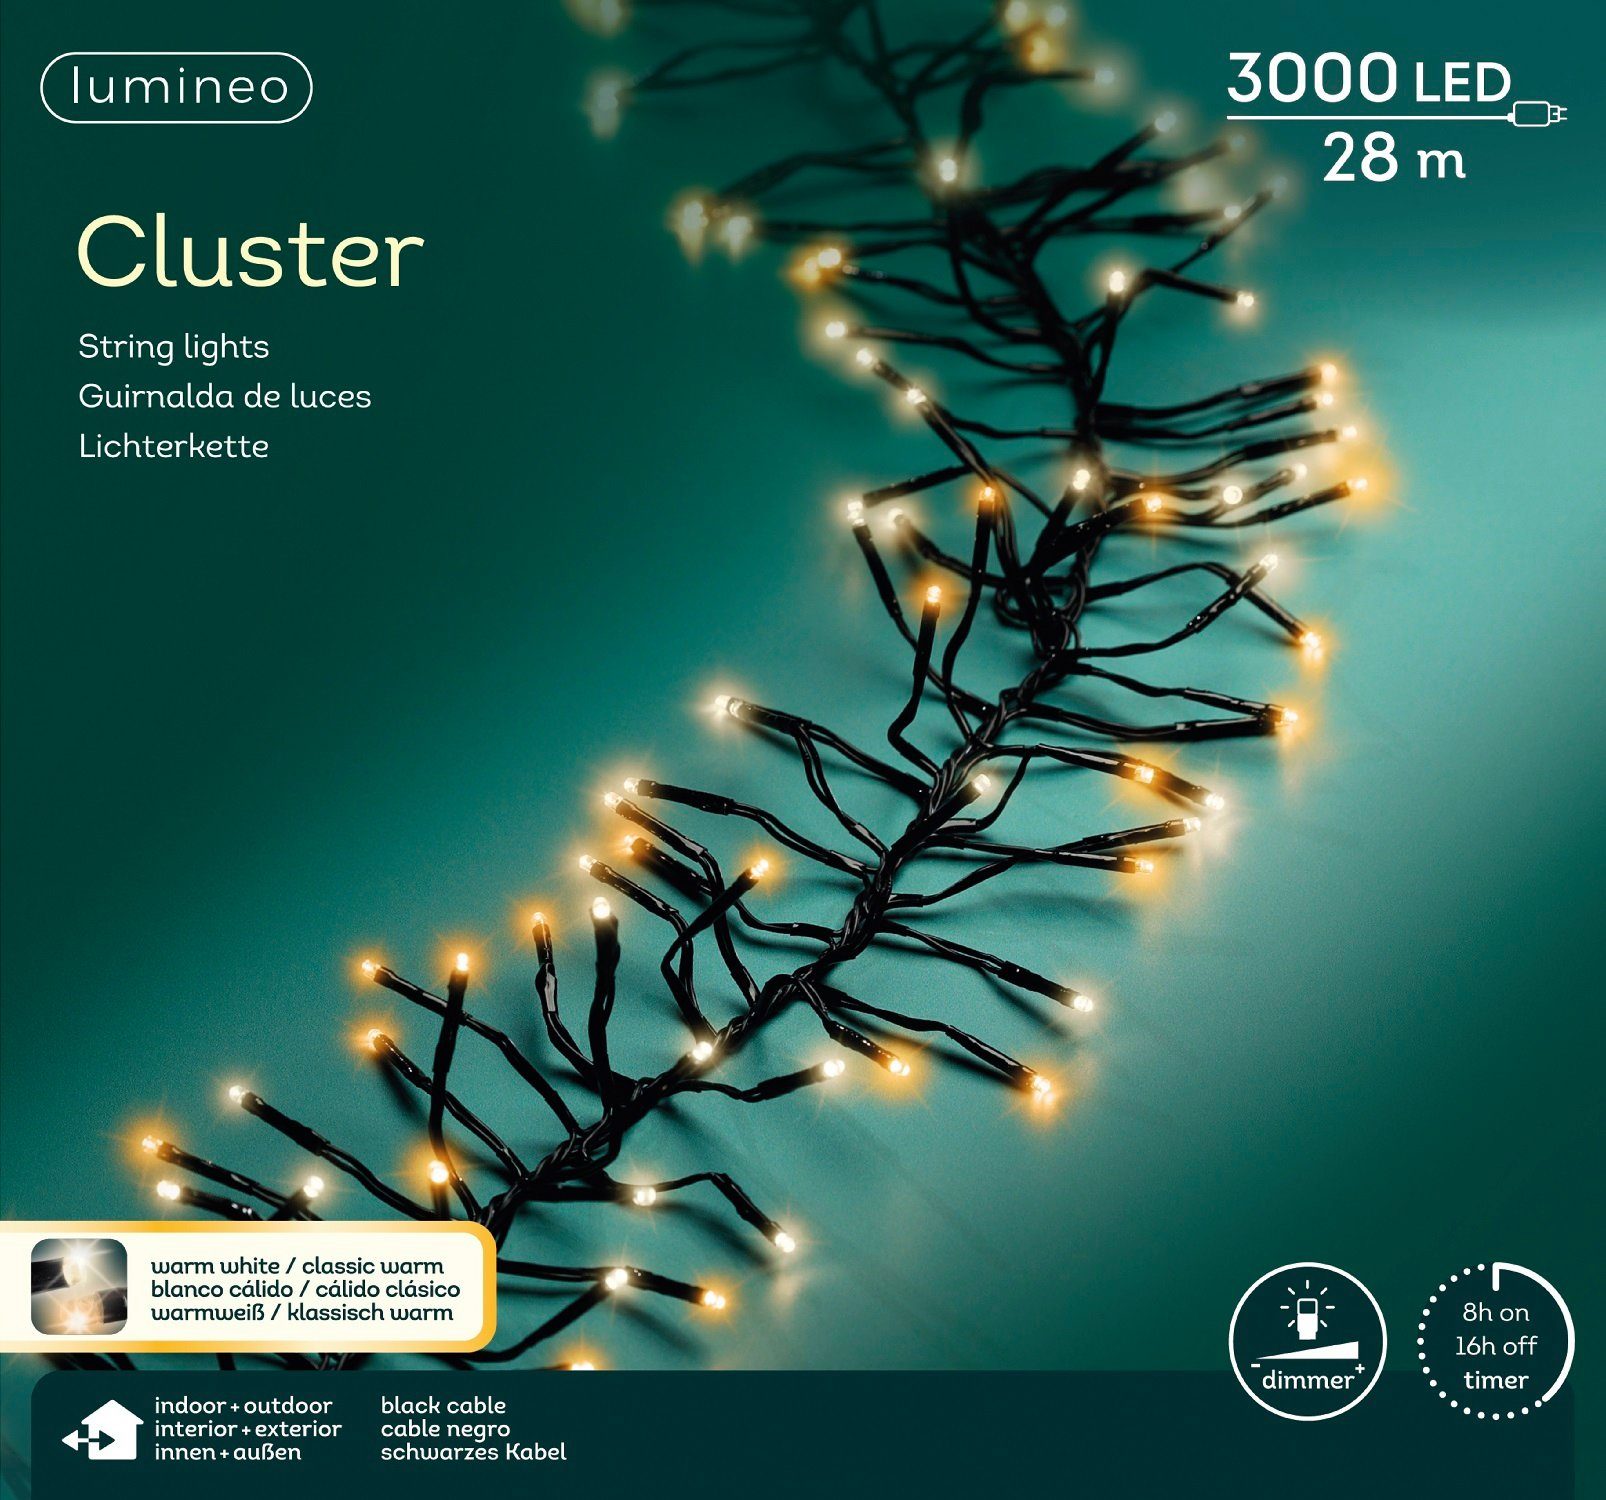 Lumineo LED-Lichterkette Lumineo Lichterkette Cluster 3000 LED 28 m warm  weiß / klassisch warm, Dimmbar, Timer, Indoor, Outdoor